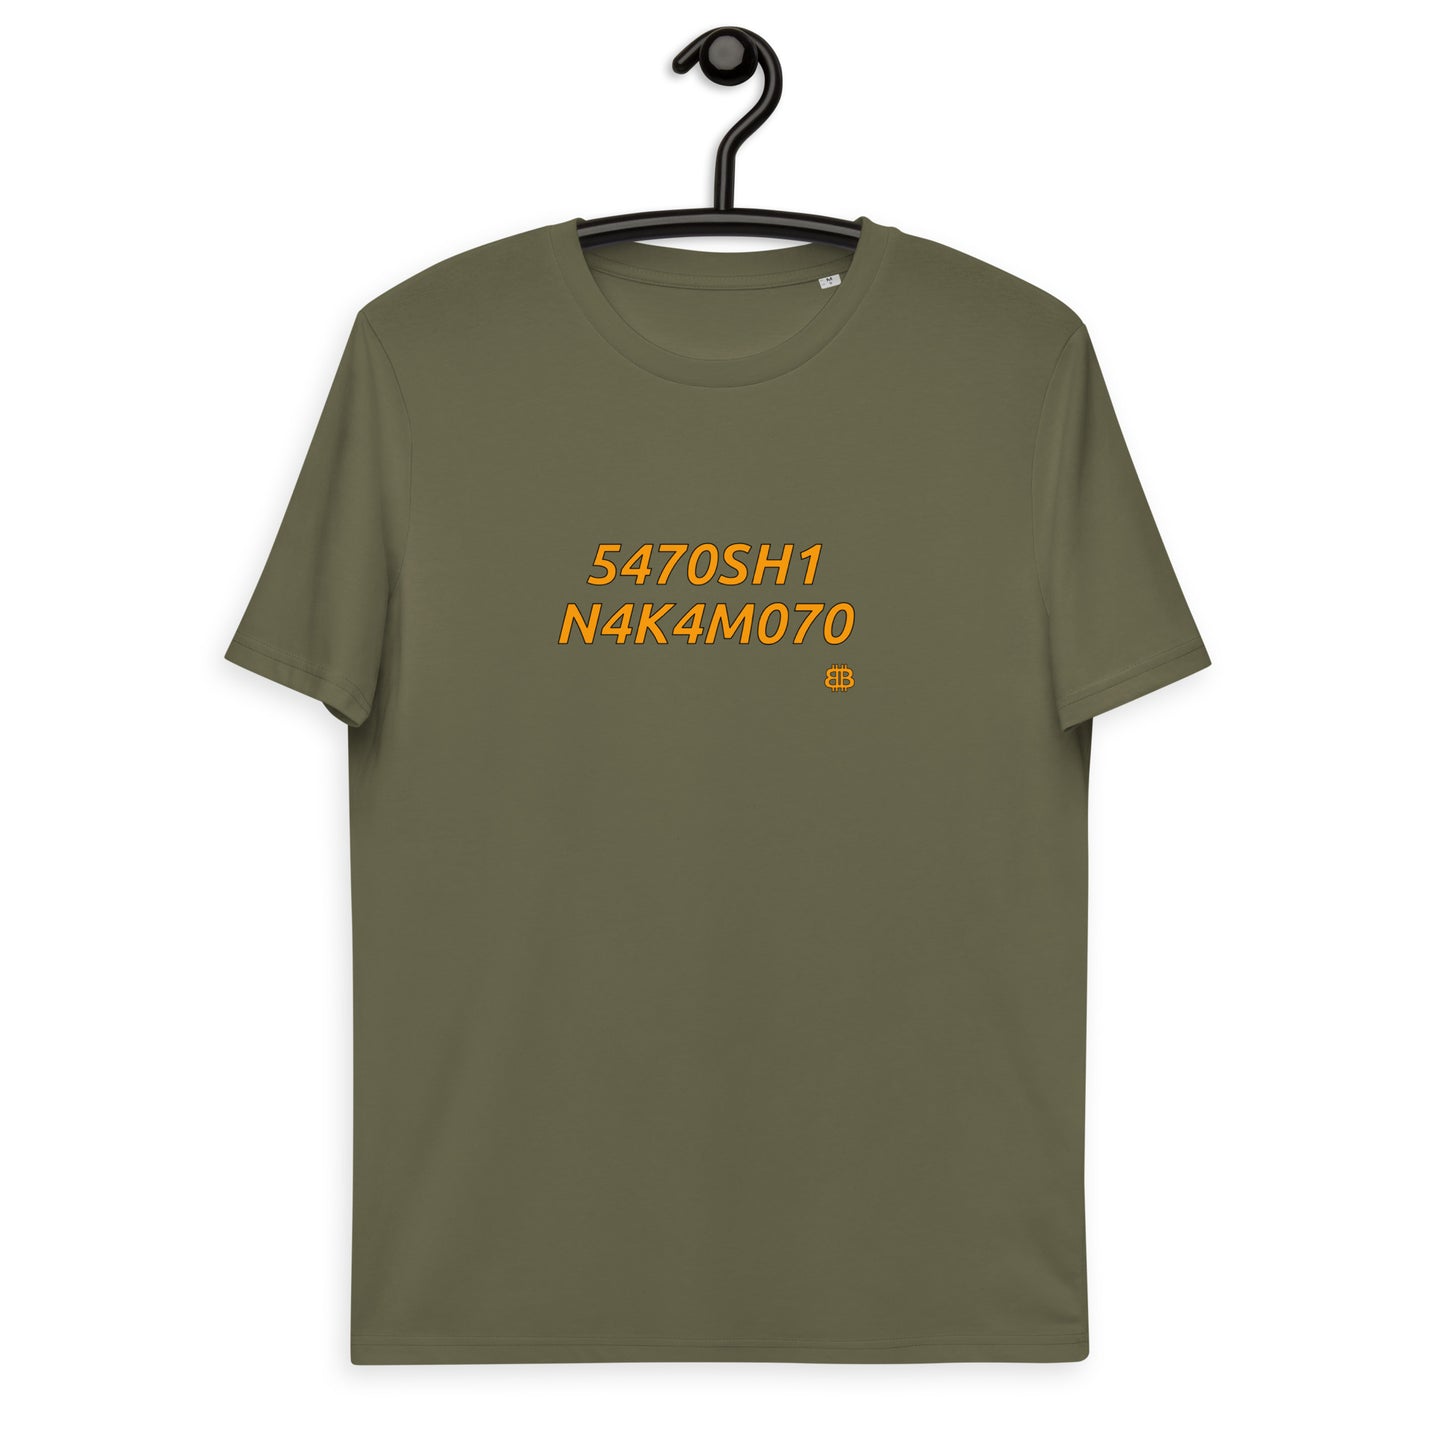 Camiseta unisex de algodón orgánico "N4K4M070"